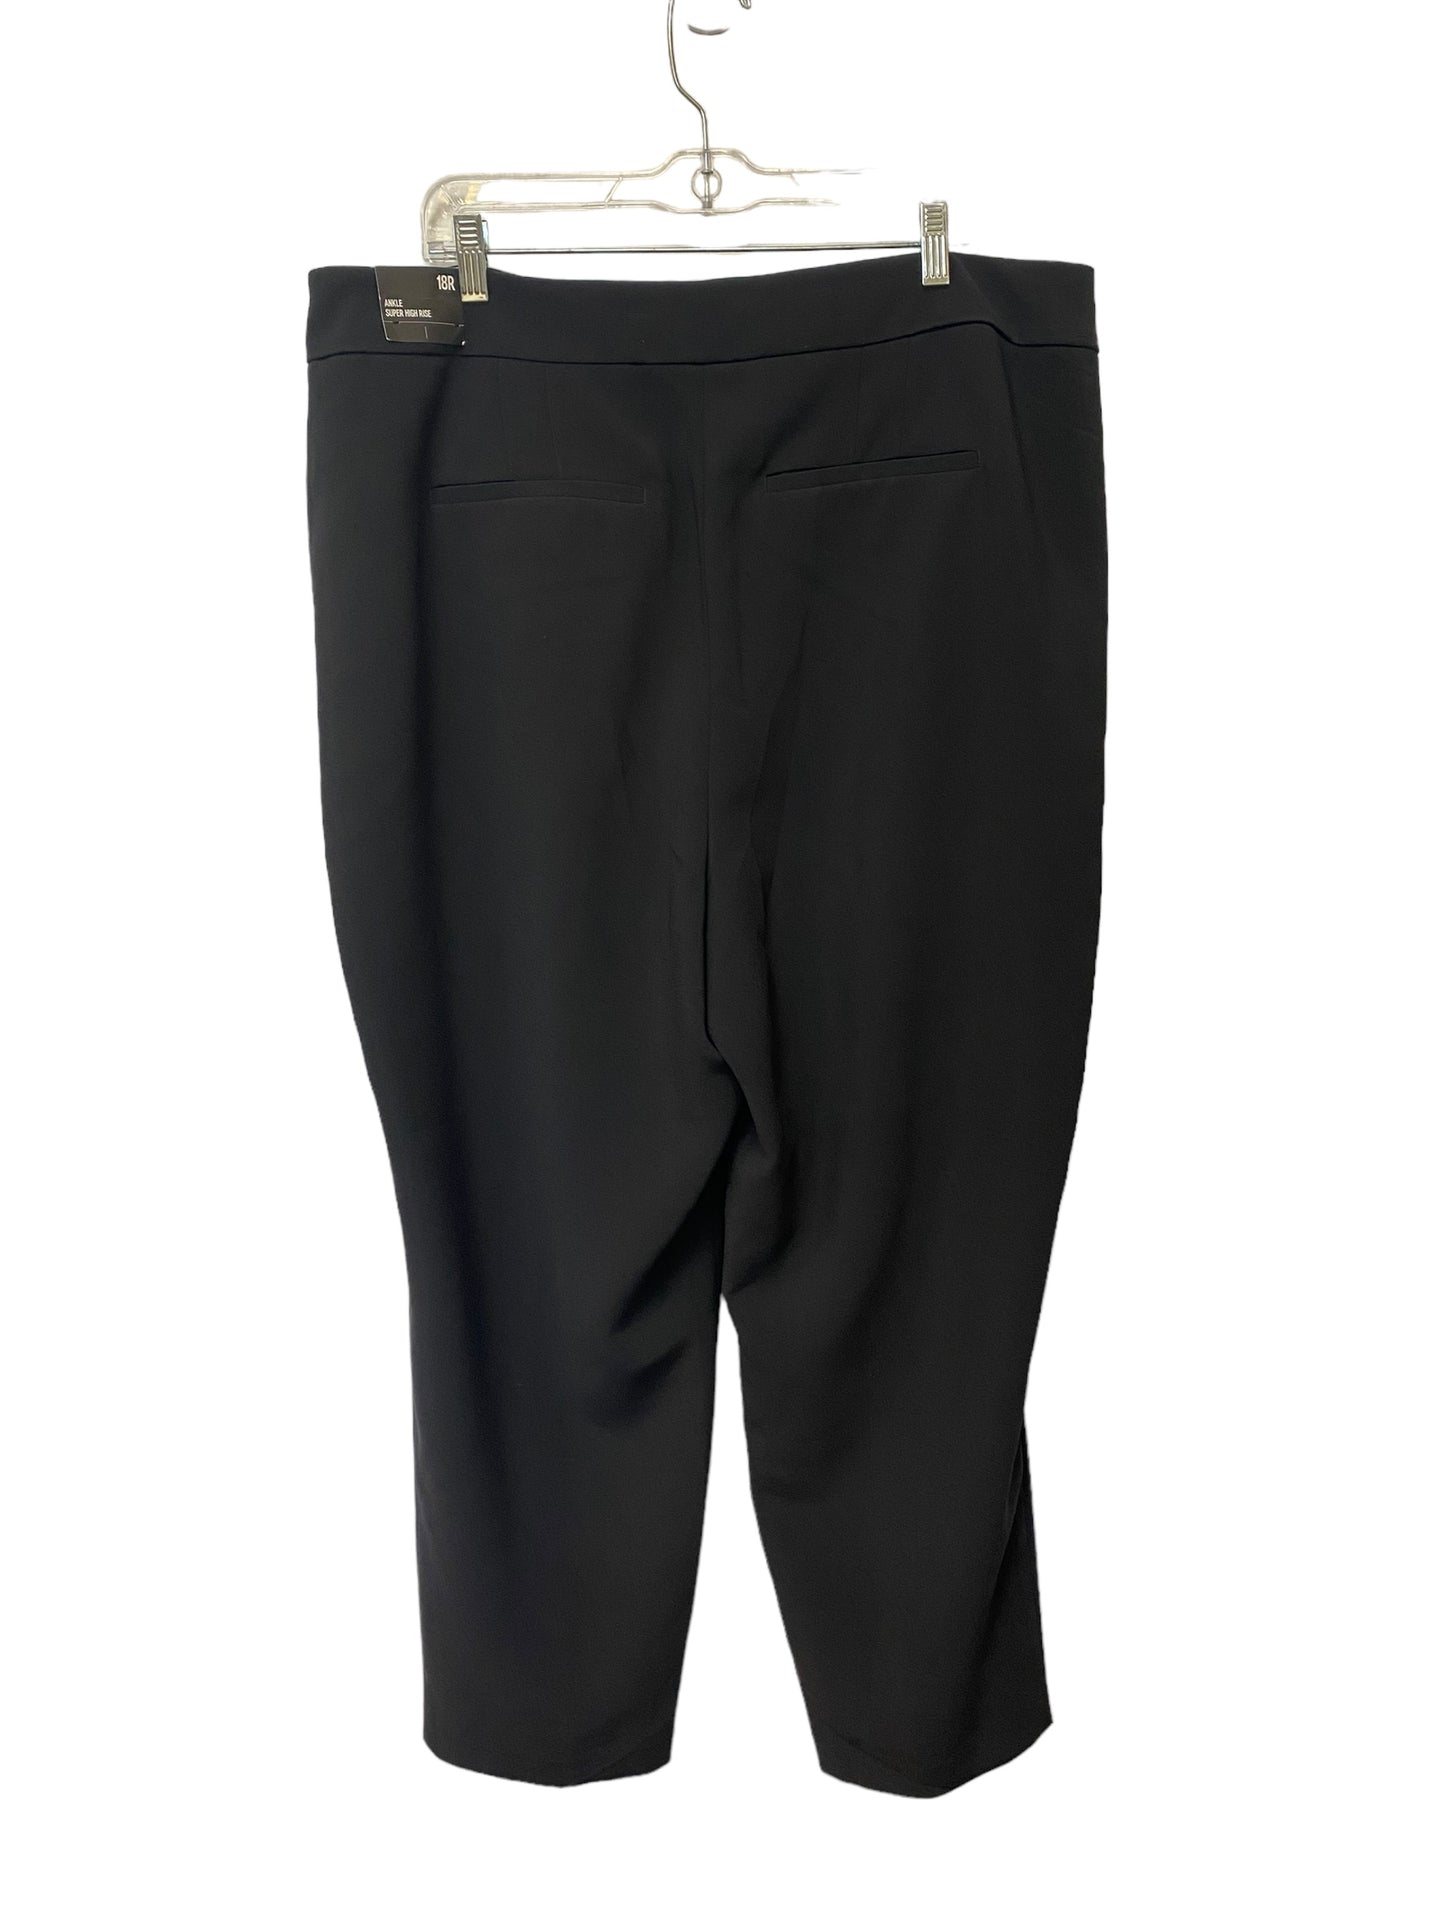 Black Pants Dress Express, Size 18